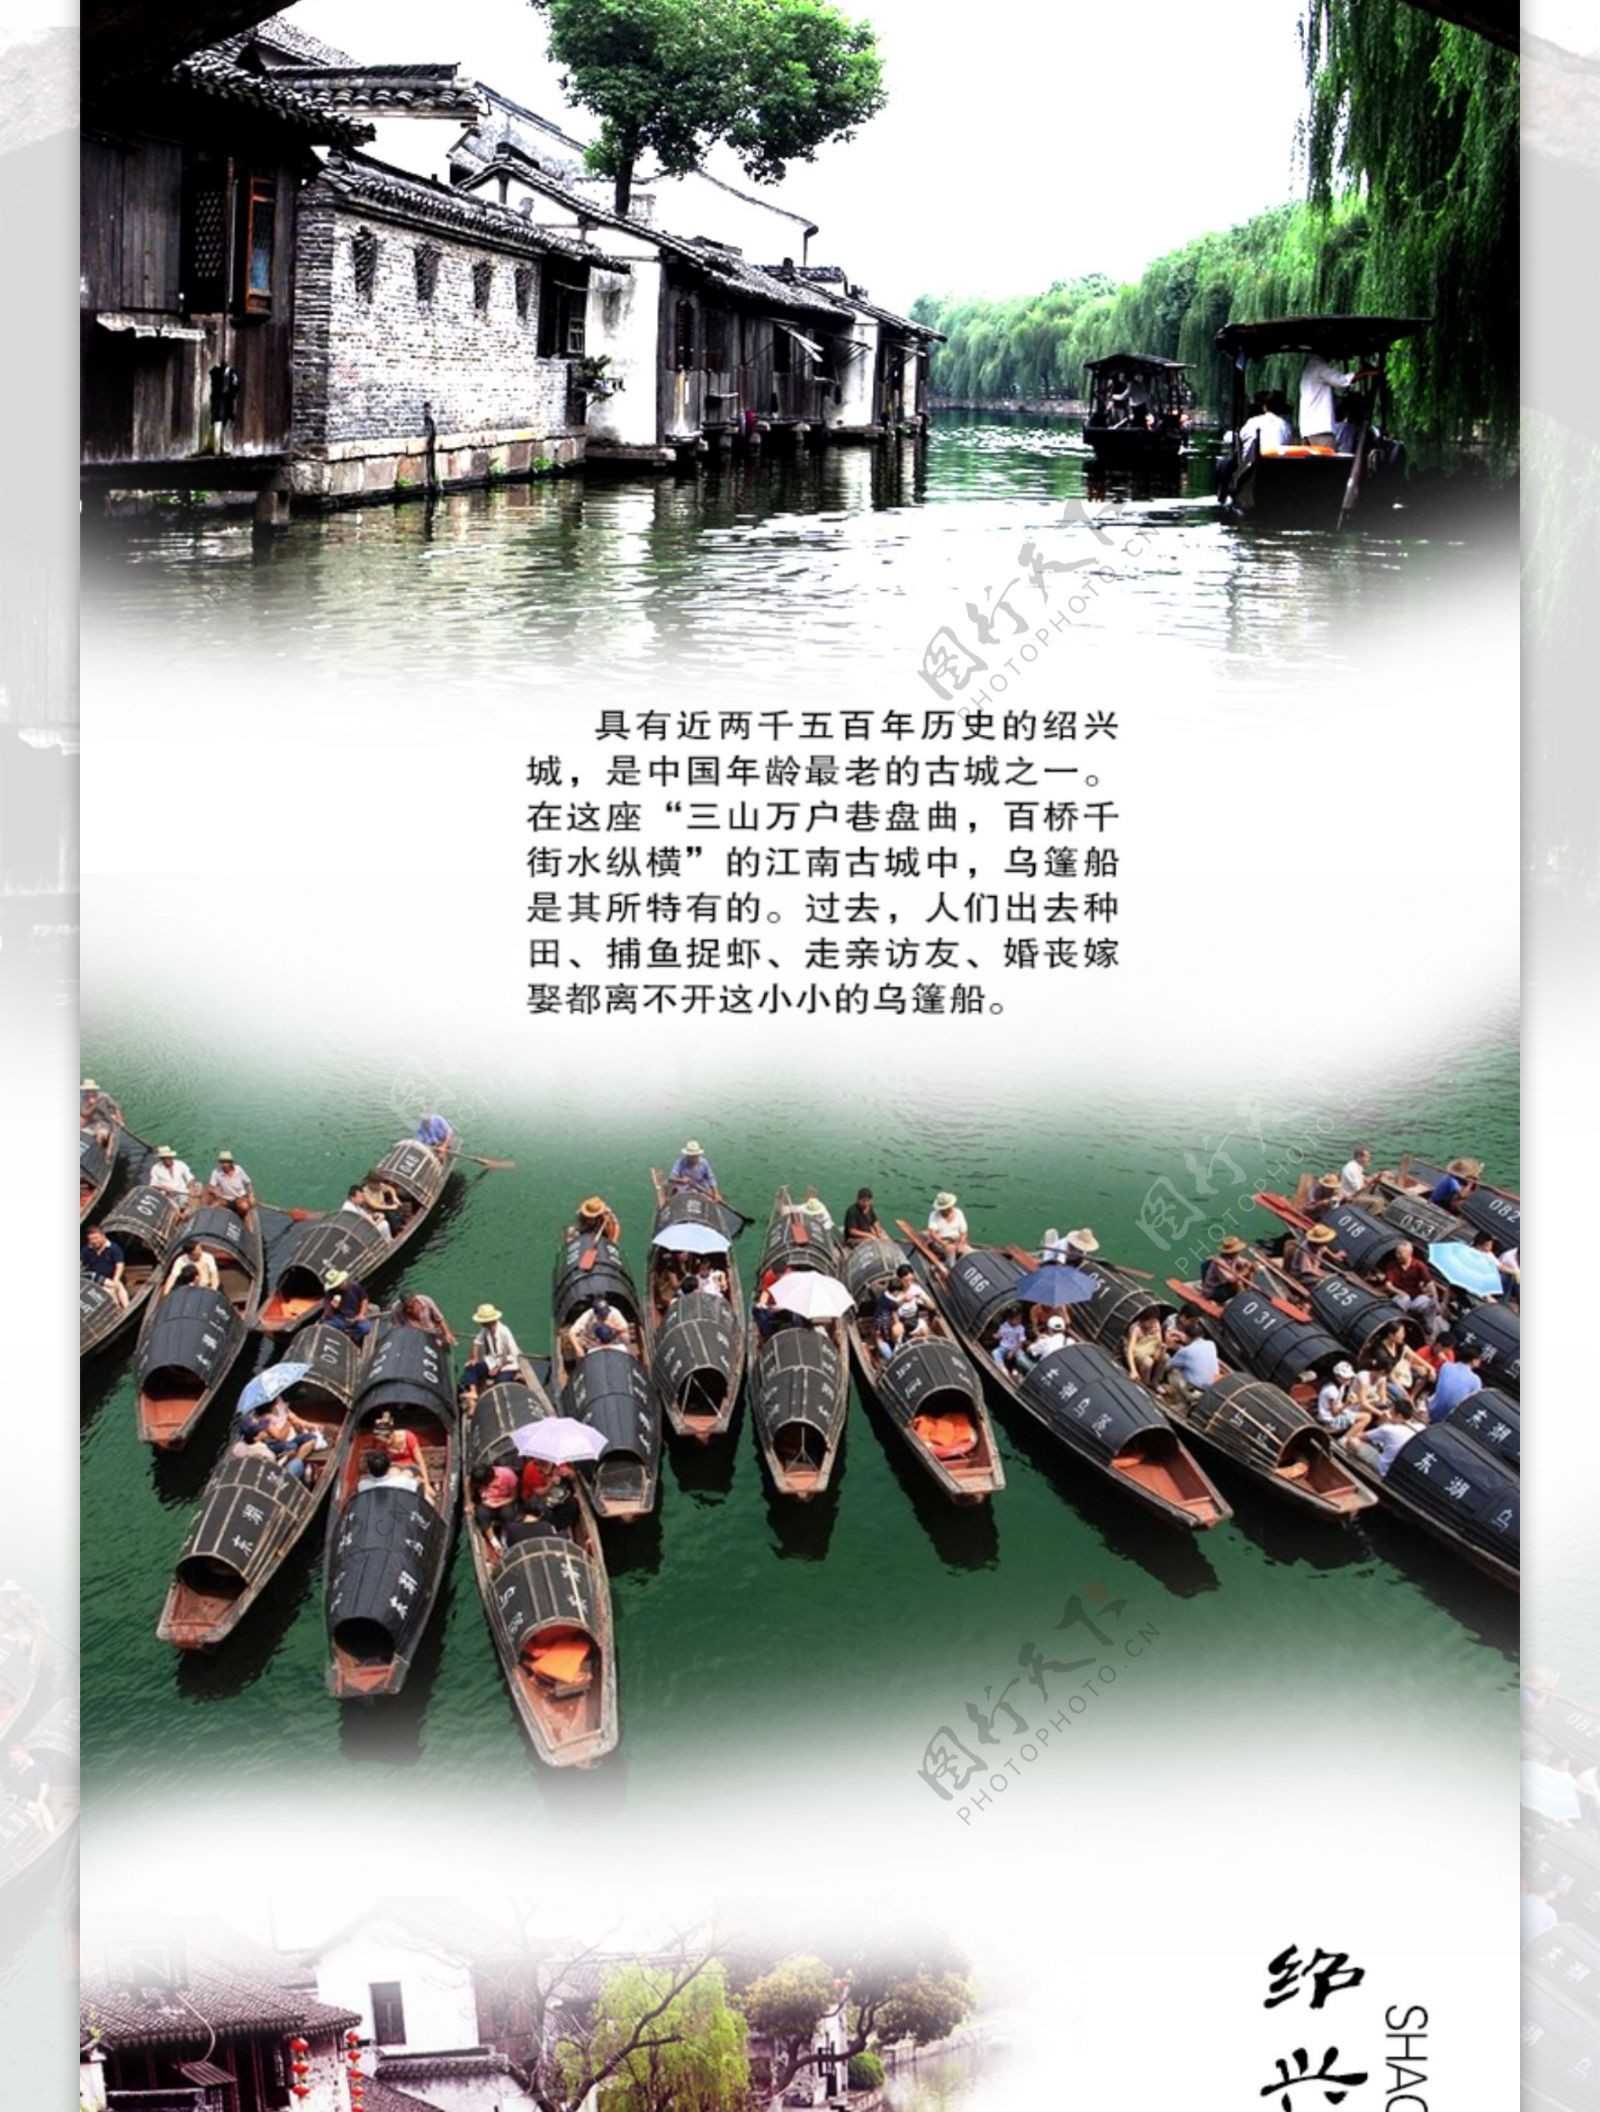 绍兴乌篷船旅游网页图片